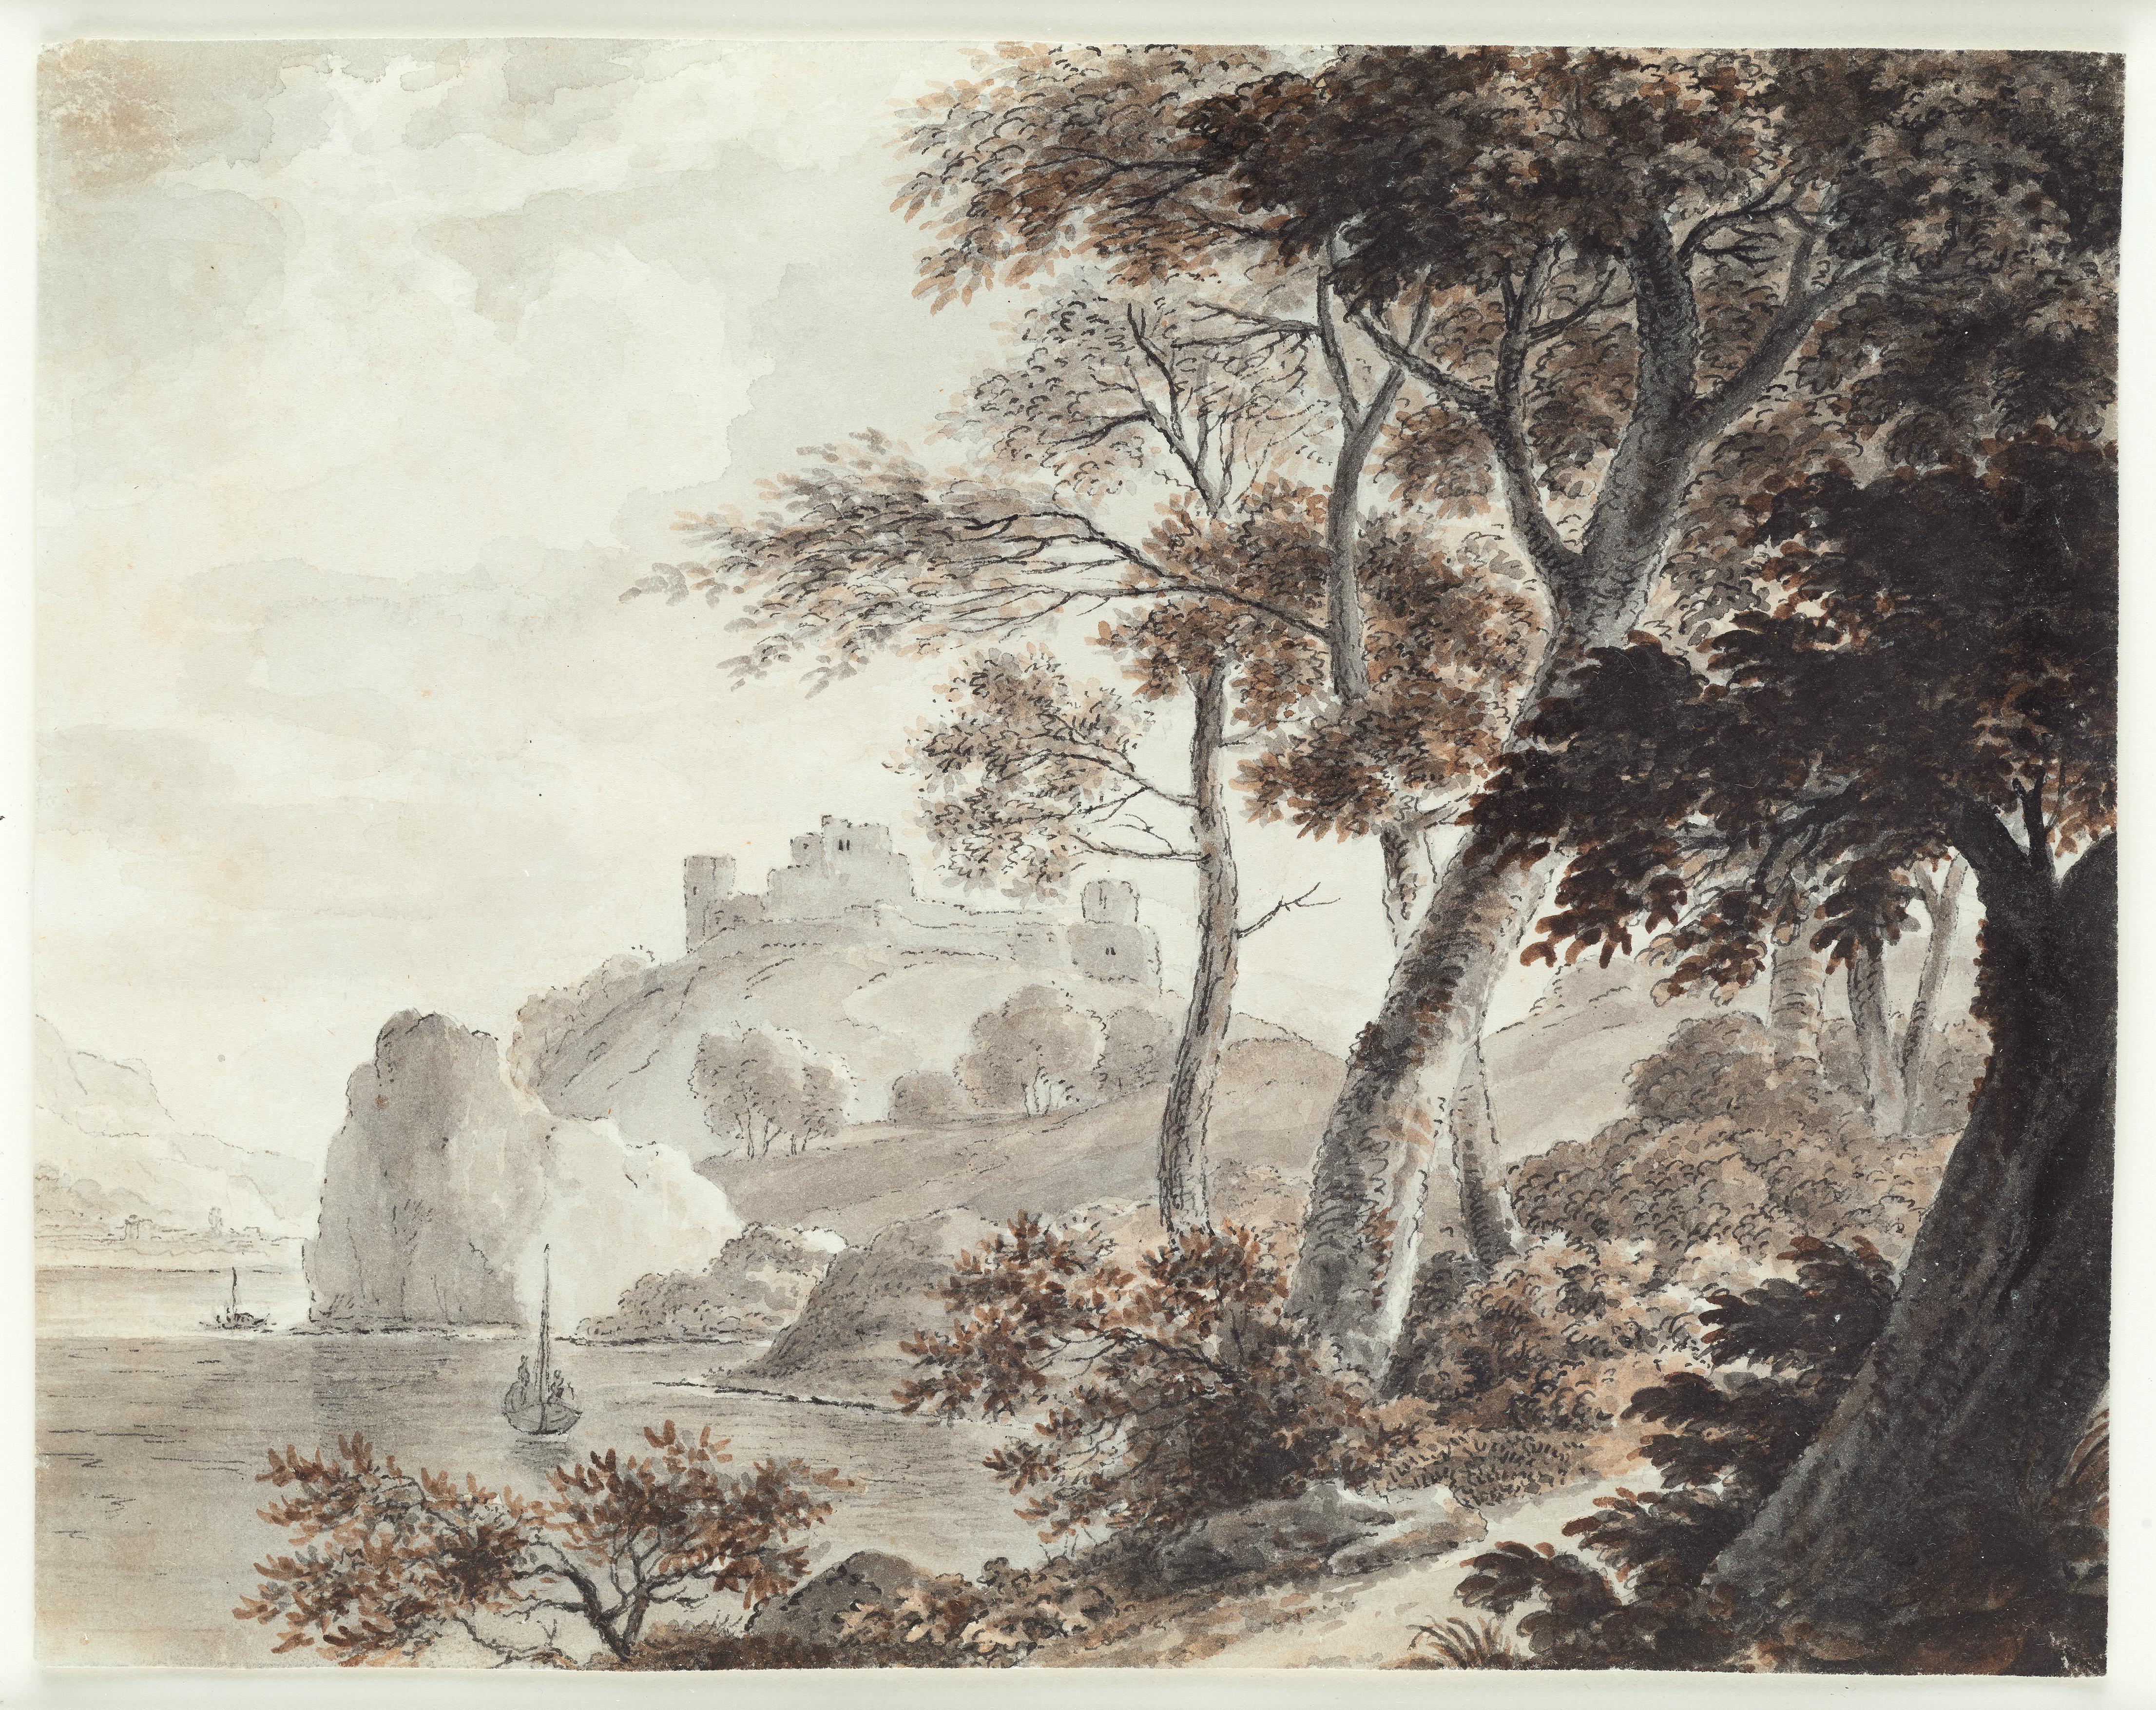 Stephan Christian von Stengel Landscape Art – Südstaatliche Landschaft, Schiffe, Zeichnung eines alten Meisters, 19. Jahrhundert, von Von Stengel